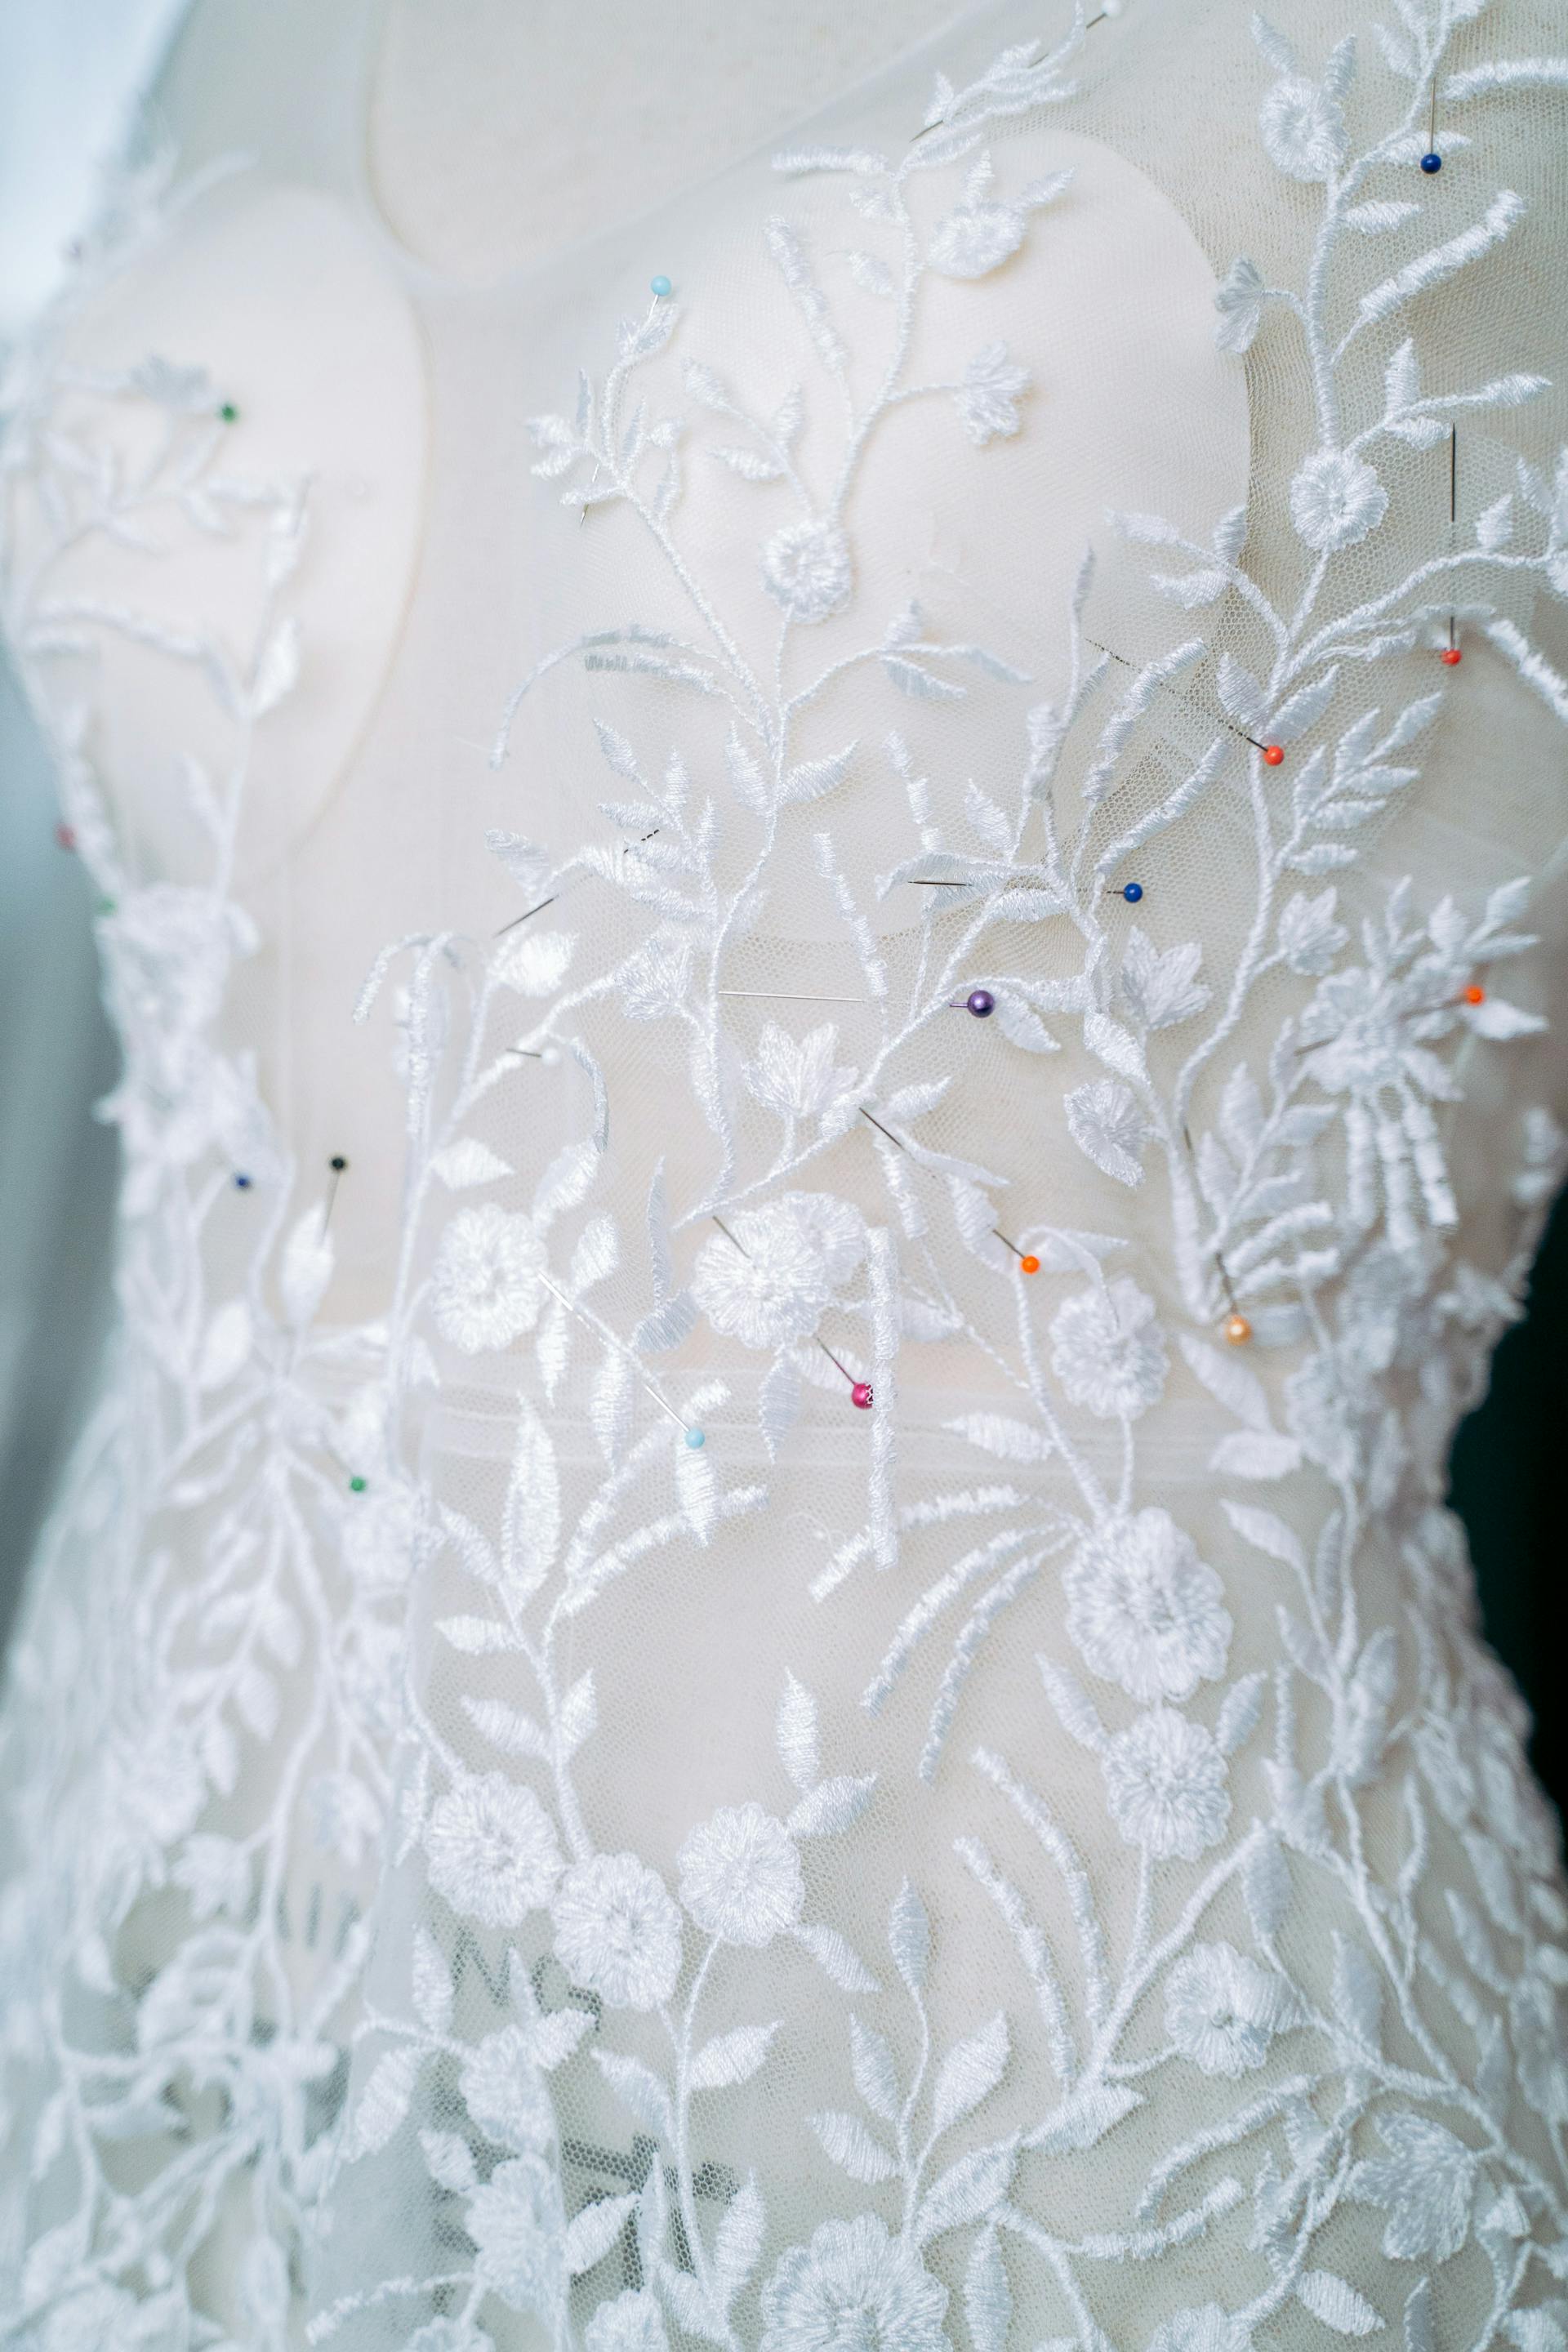 Eine Nahaufnahme eines Hochzeitskleides | Quelle: Pexels